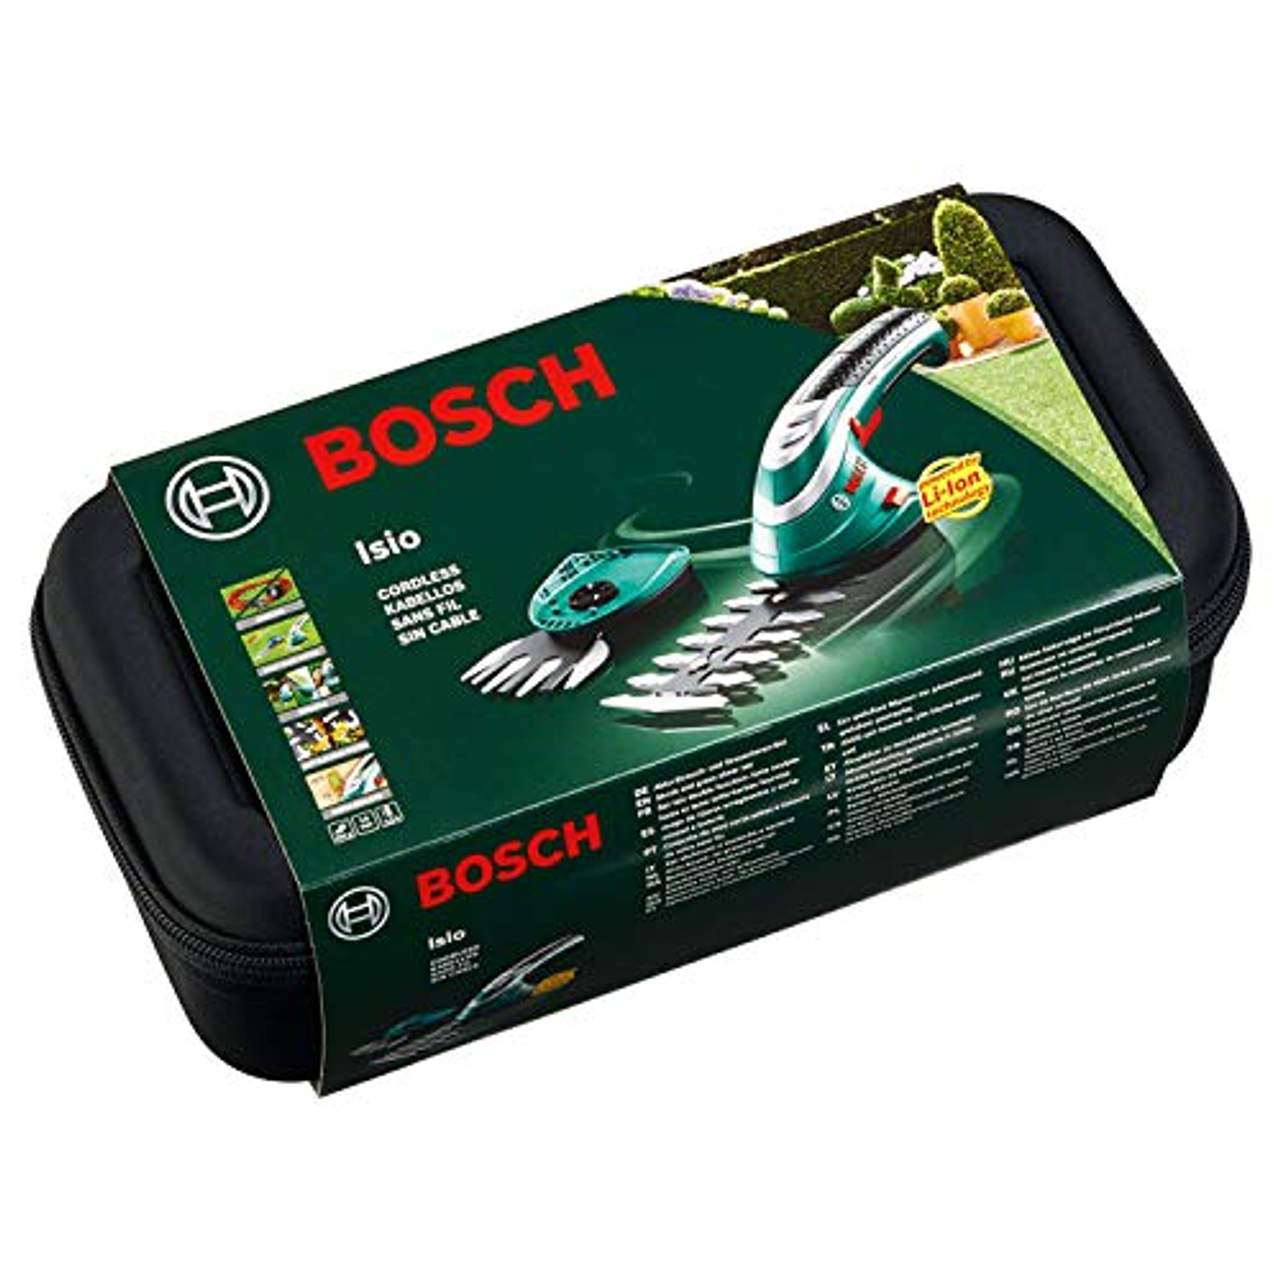 Bosch Akku Grasschere Set Isio